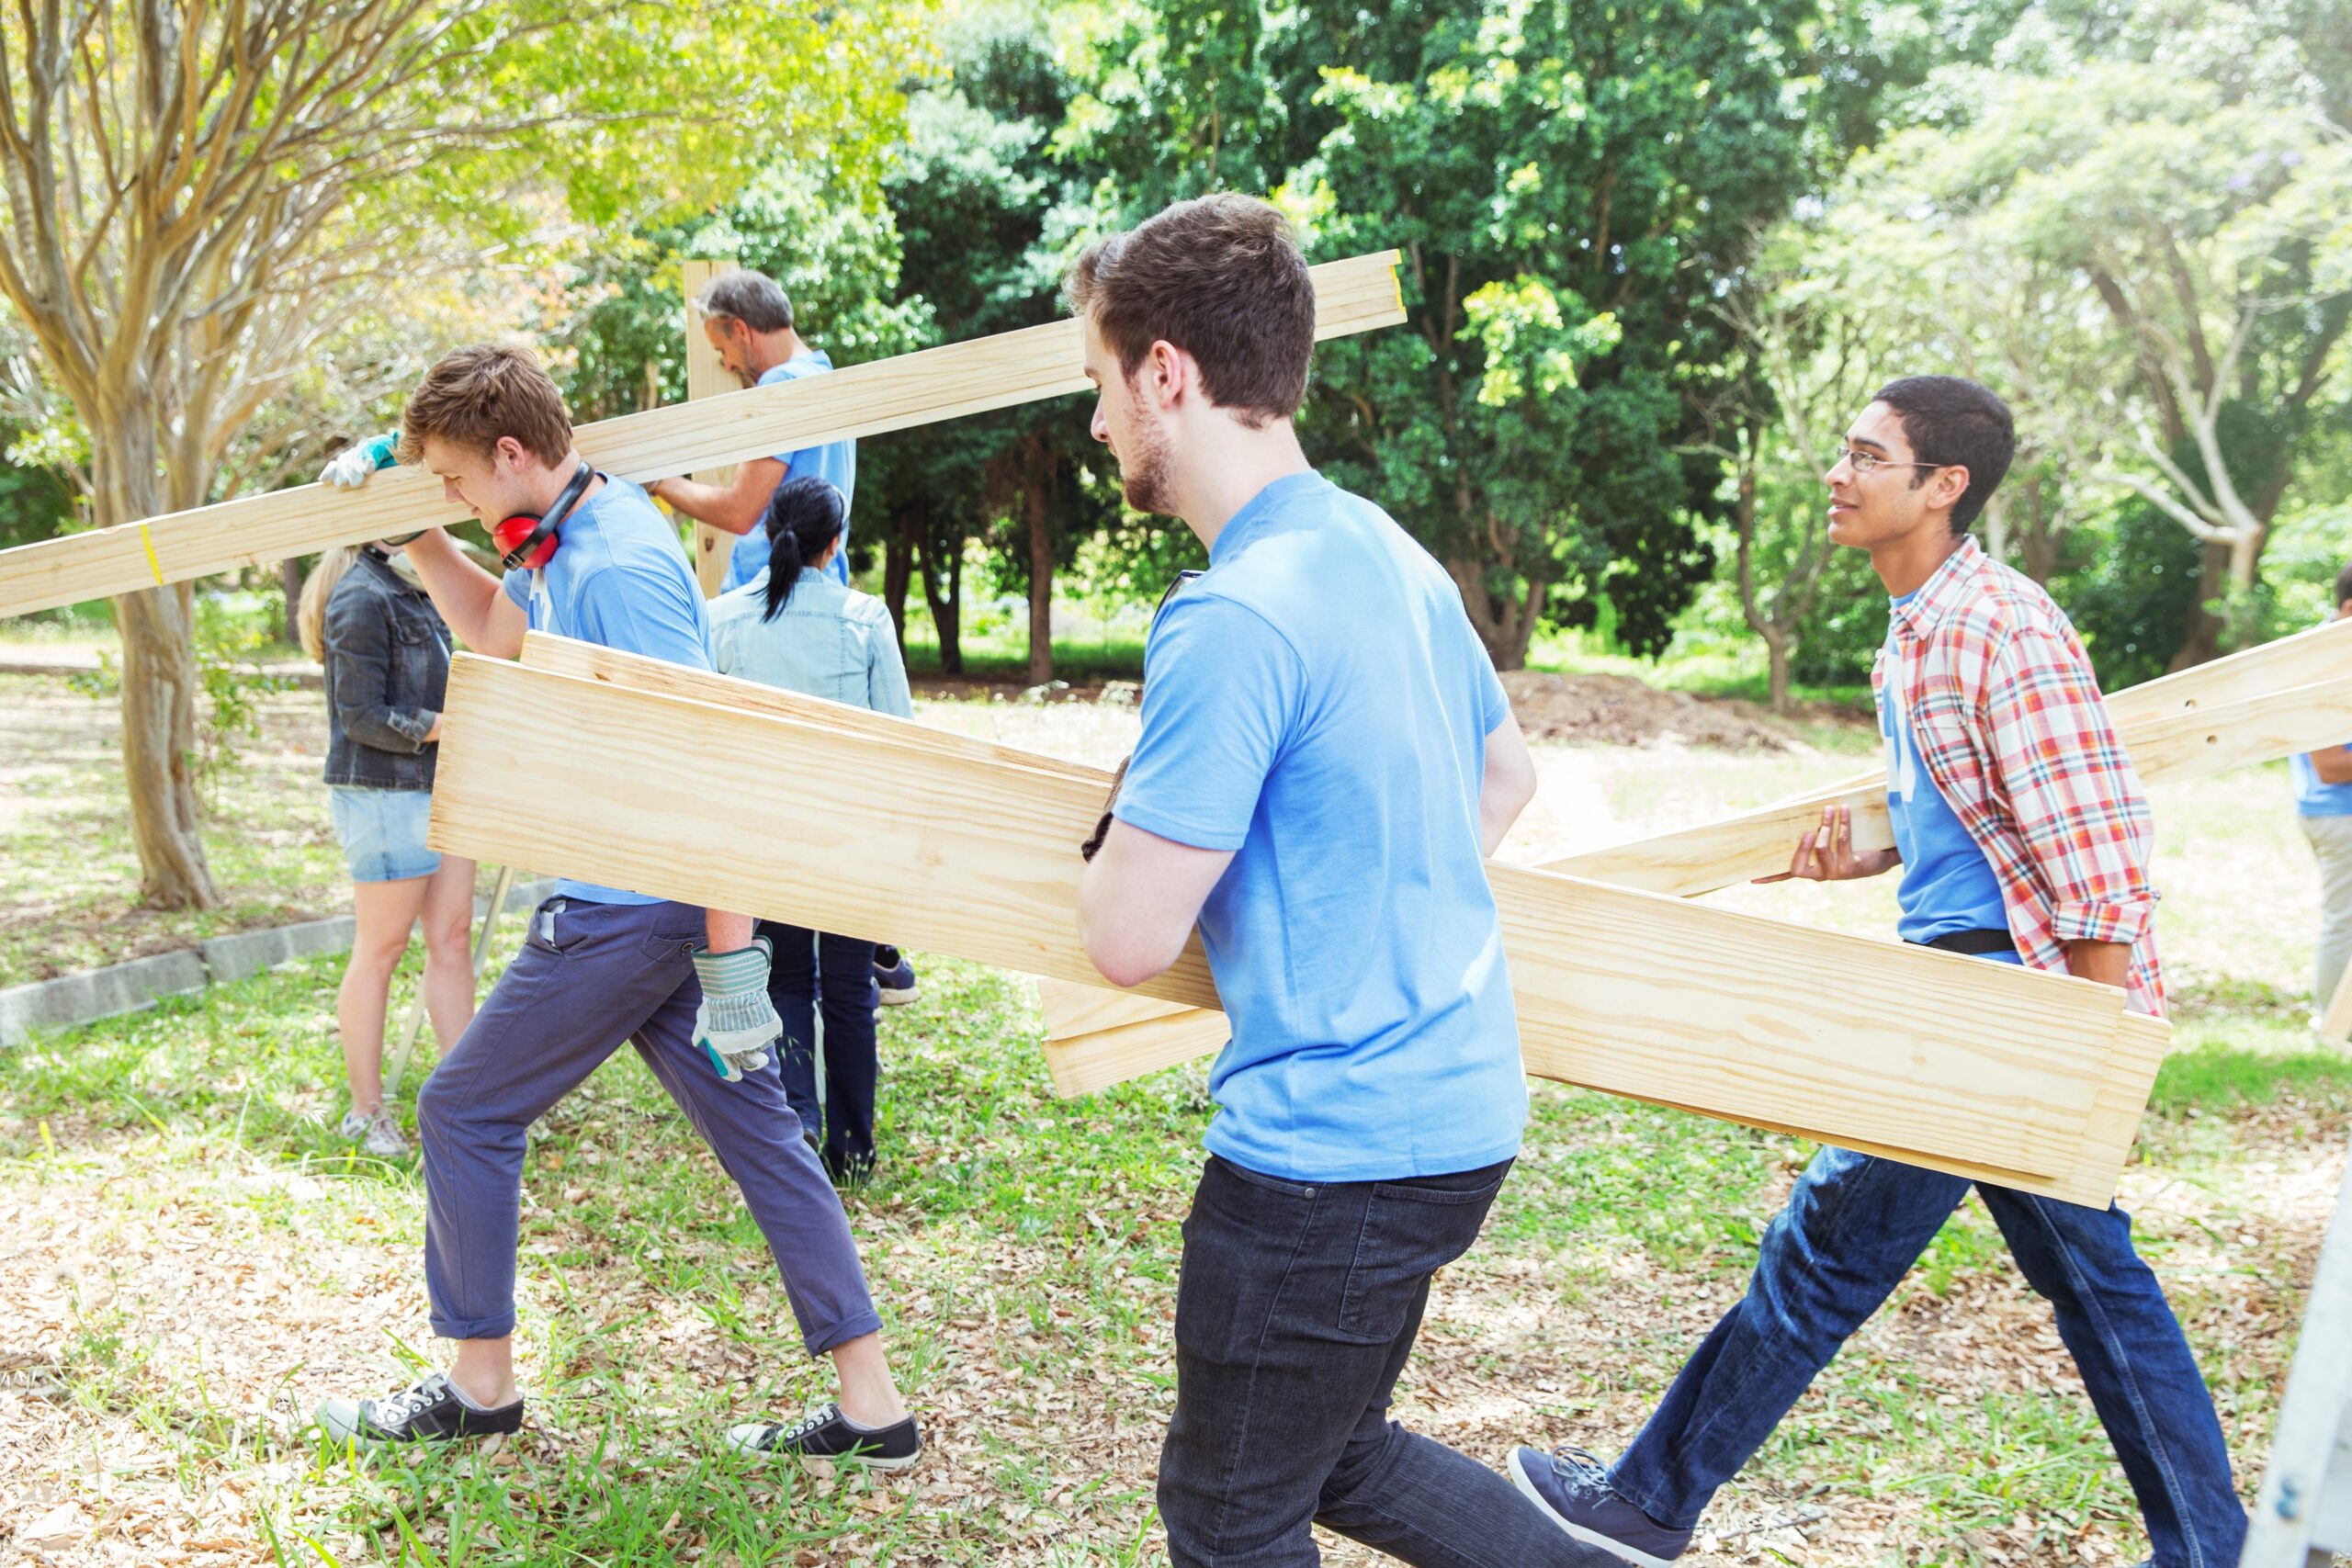 Humanitarian volunteers carrying wood planks